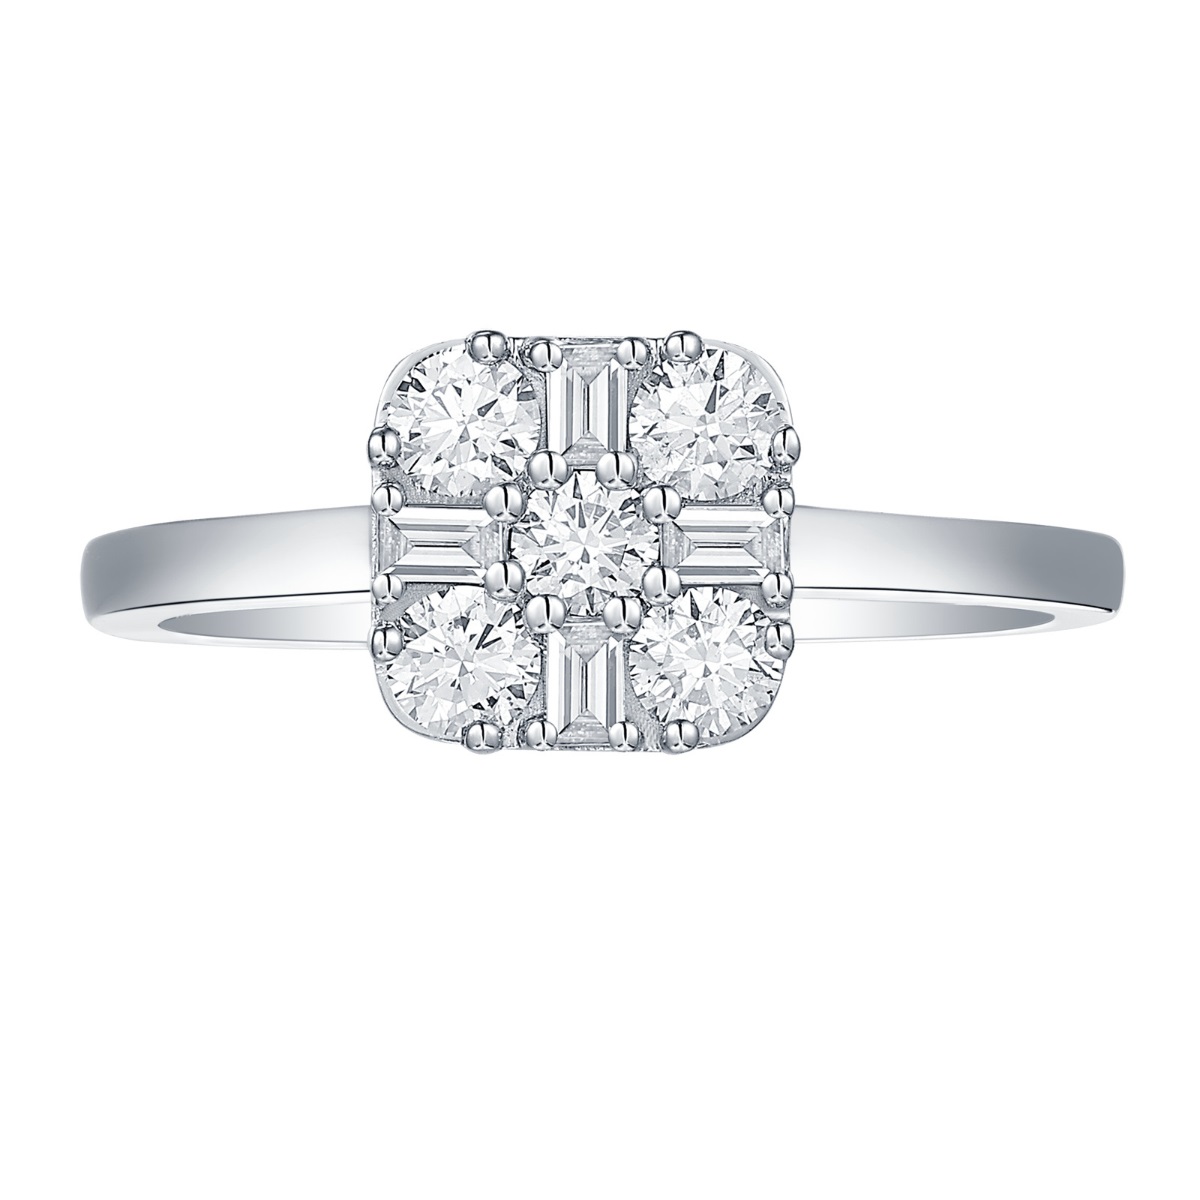 R36992WHT – 18K White Gold Diamond Ring, 0.52 TCW